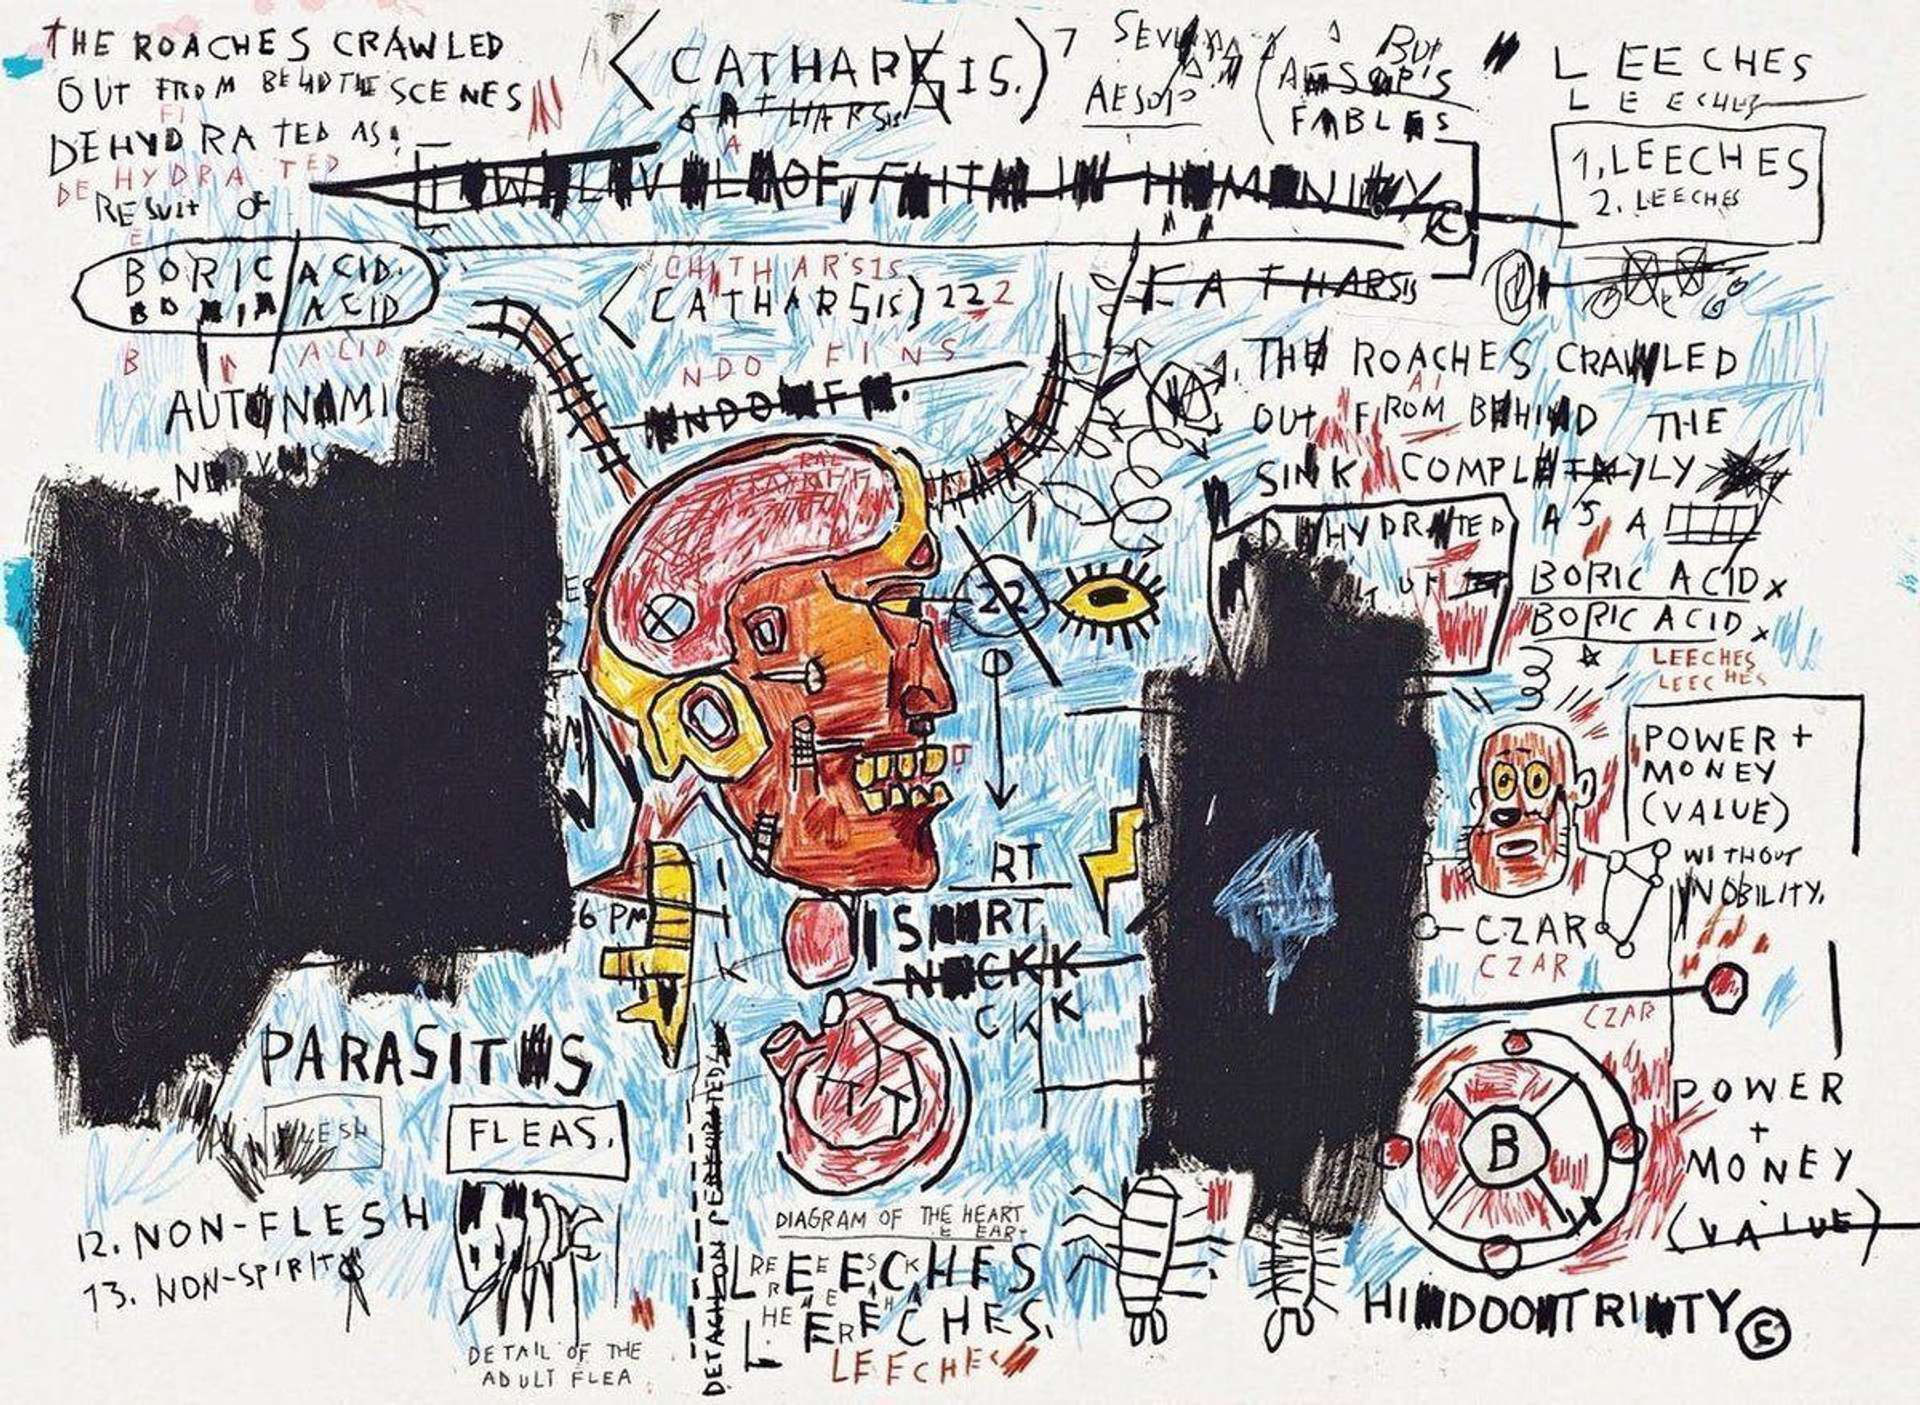 Leeches - Unsigned Print by Jean-Michel Basquiat 2017 - MyArtBroker